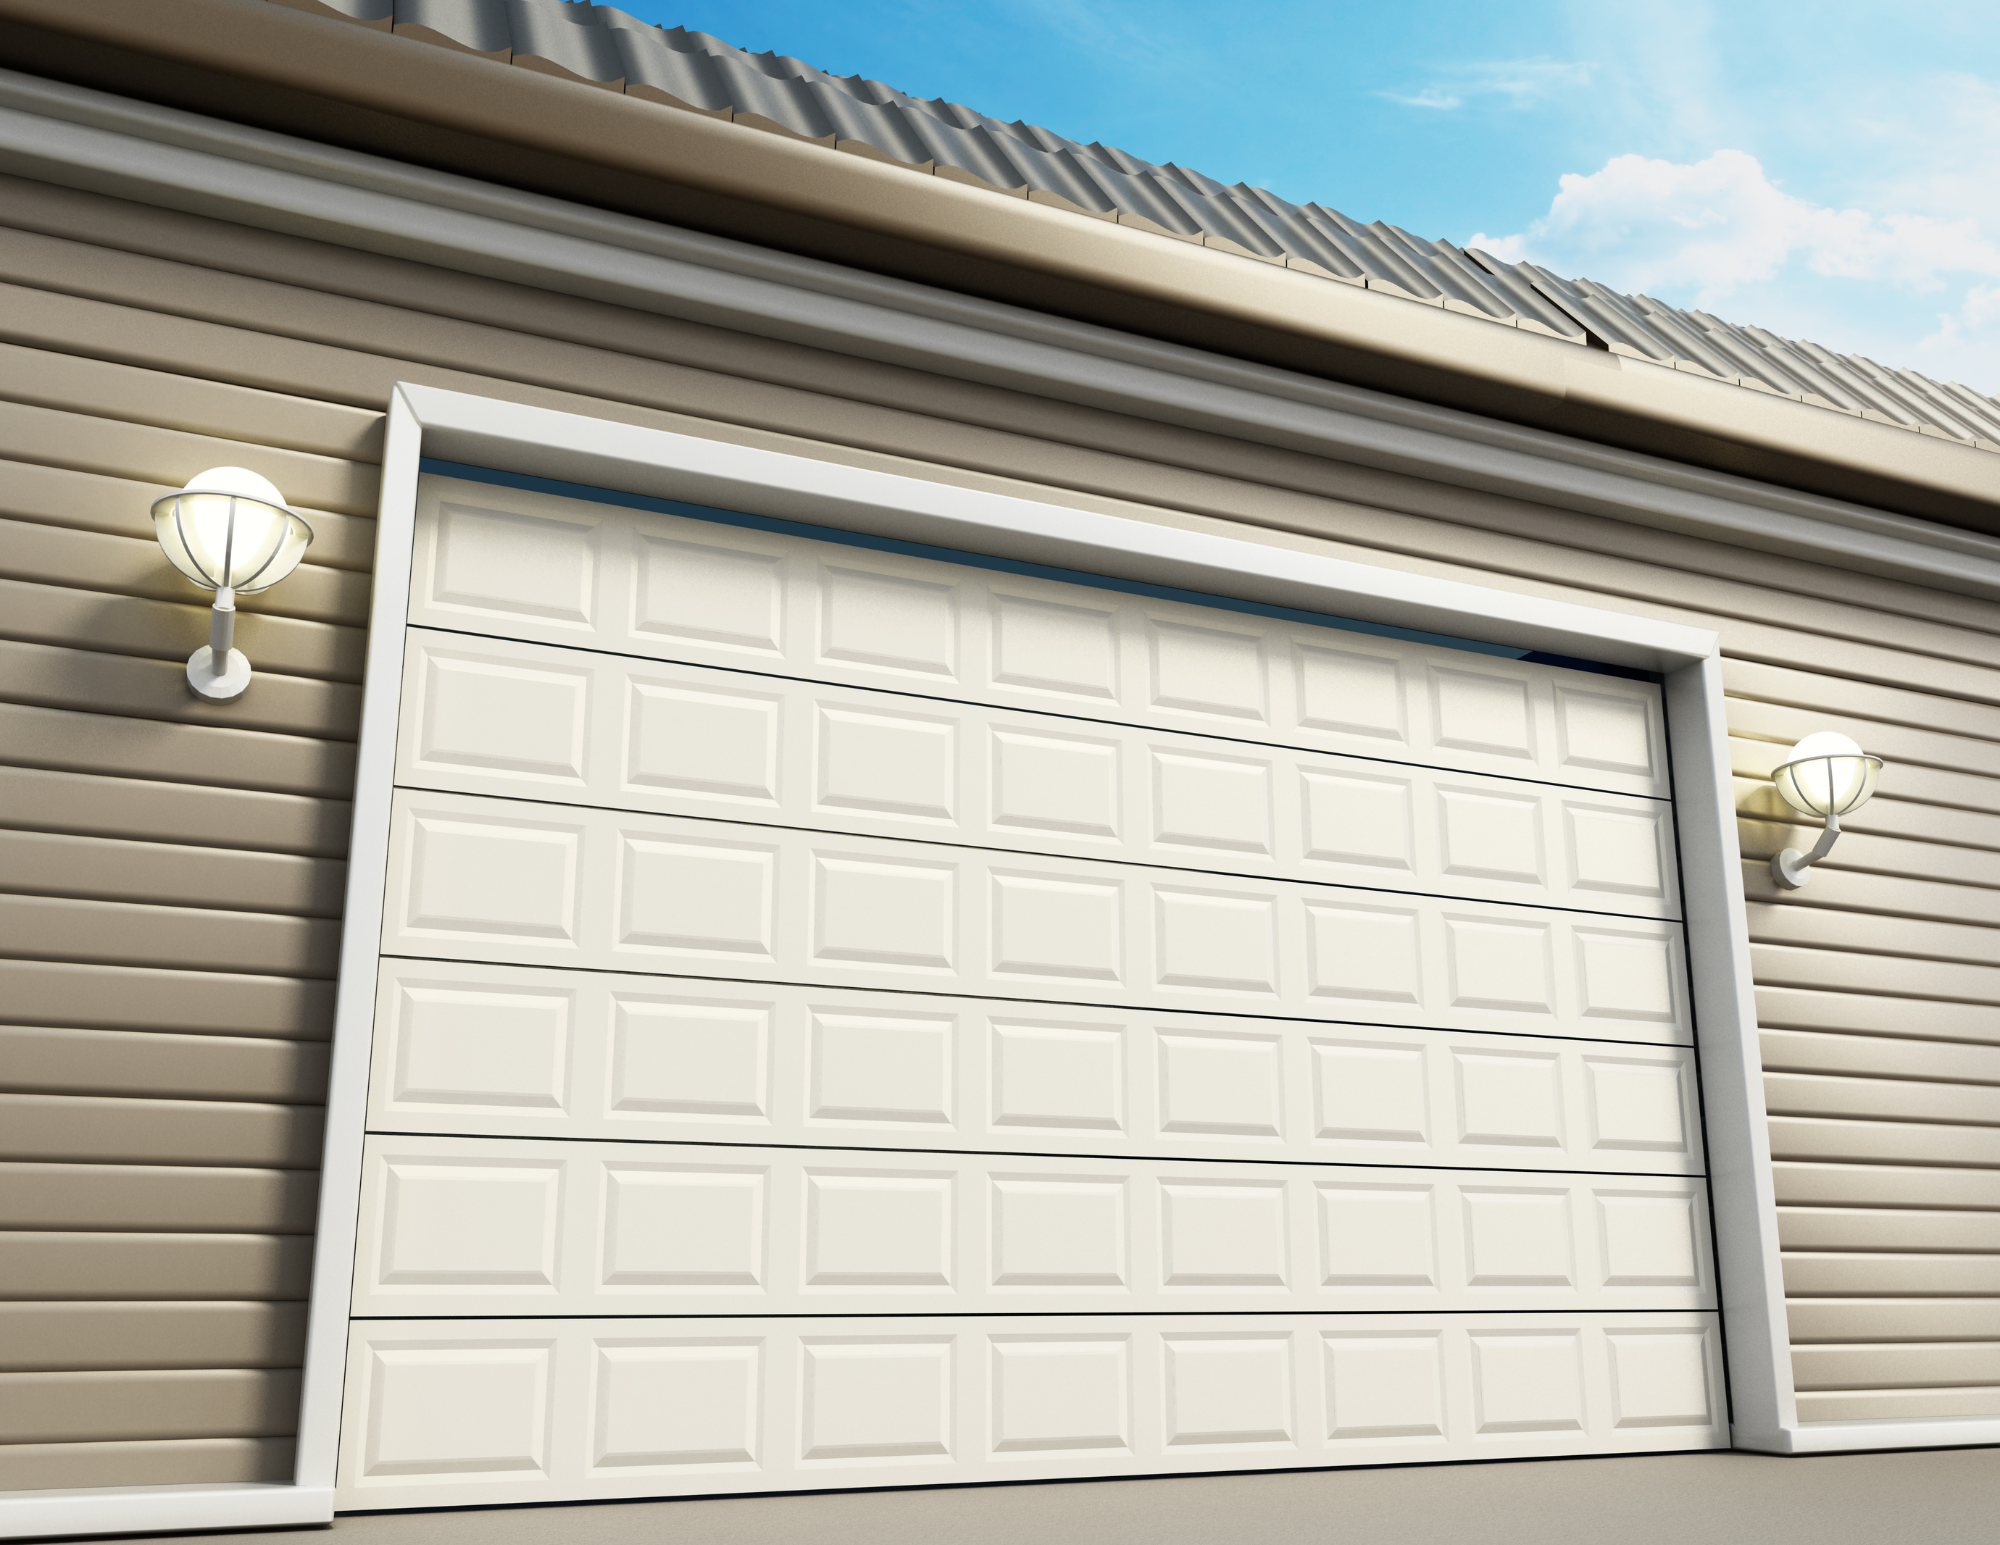 How To Make A Garage Door Quiet